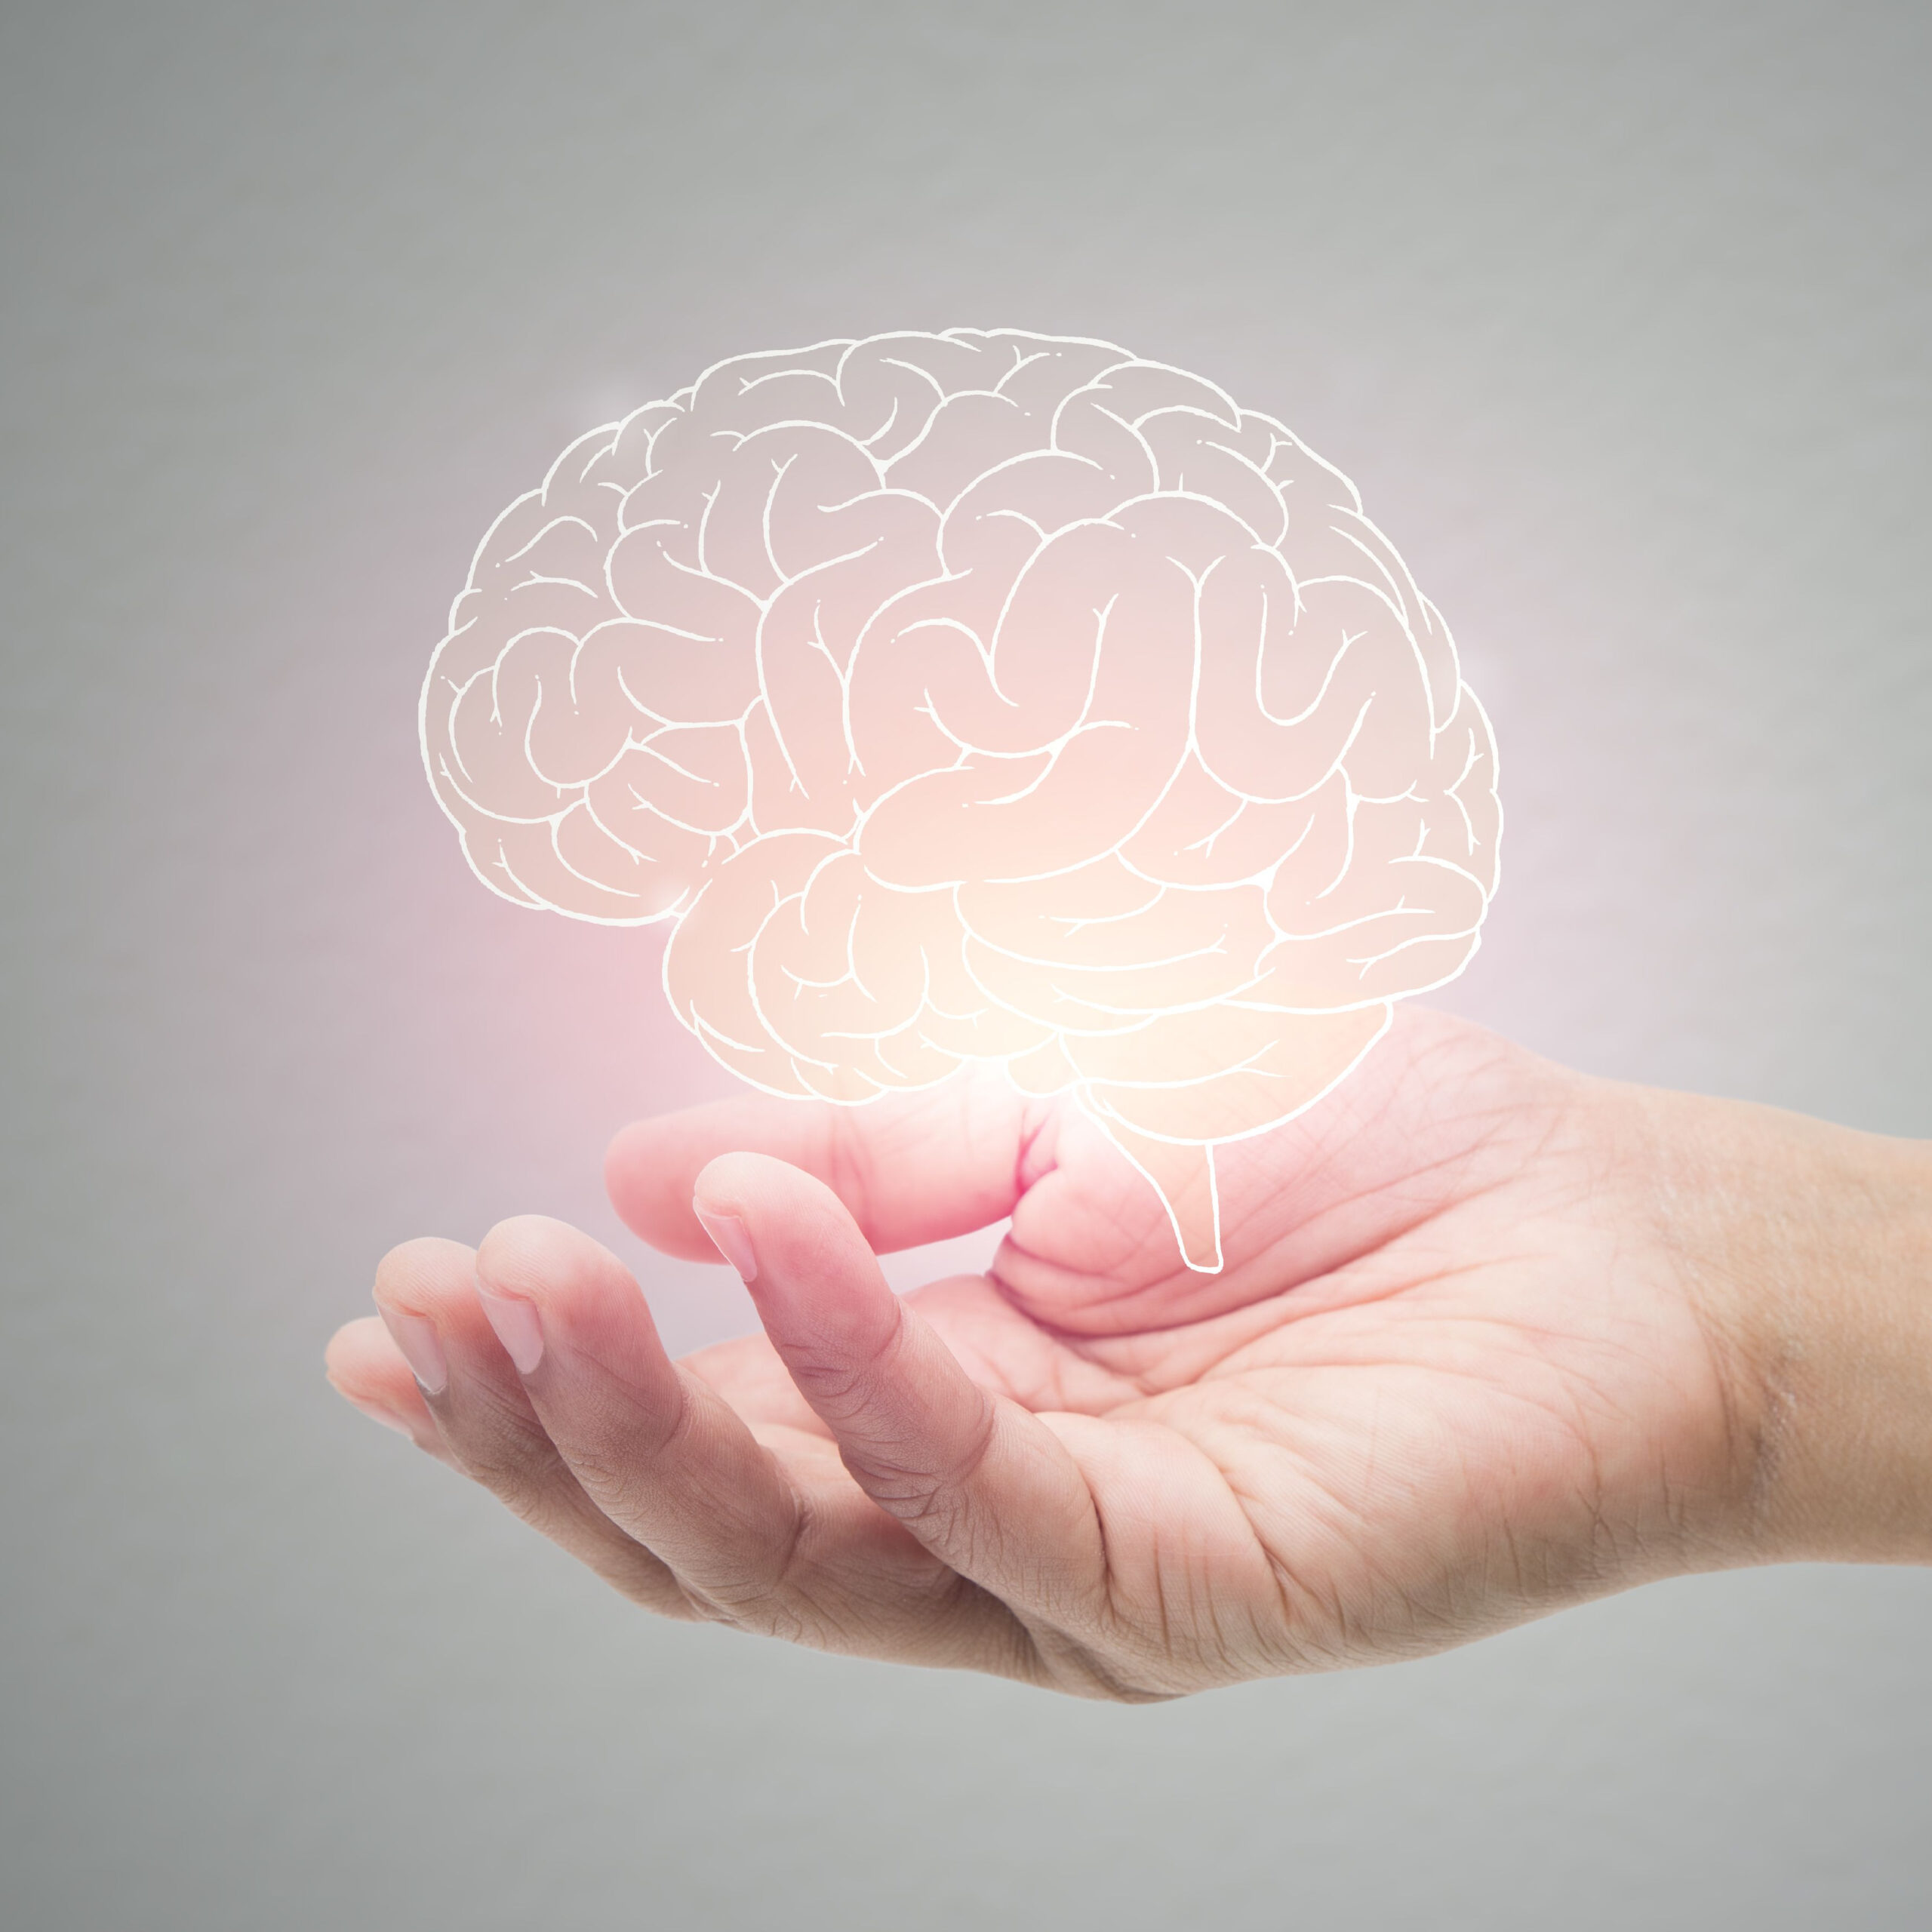 hand holding illuminated brain illustration